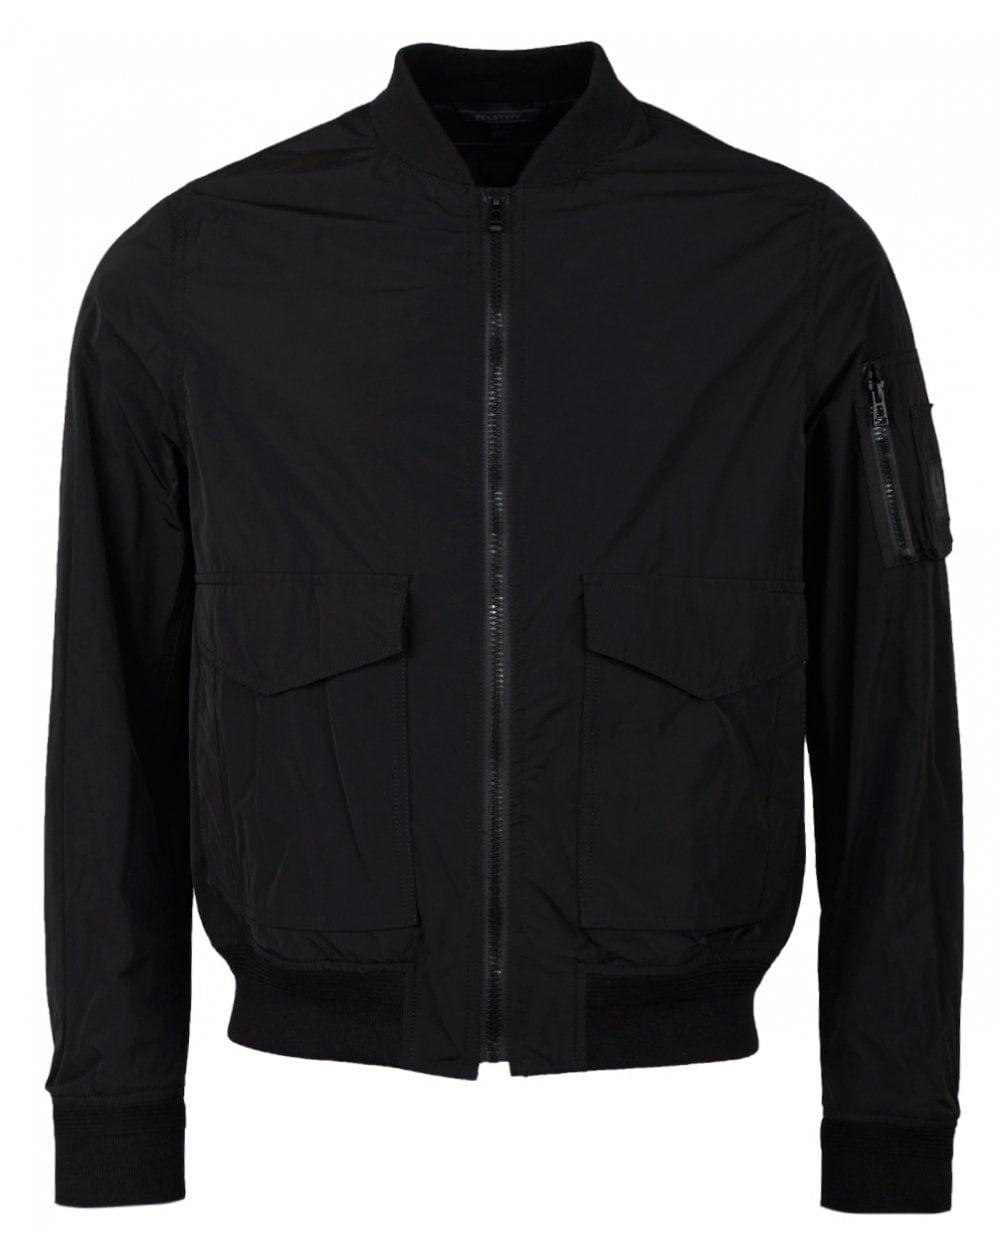 Belstaff Synthetic Barham Light Nylon Bomber Jacket in Black for Men - Lyst